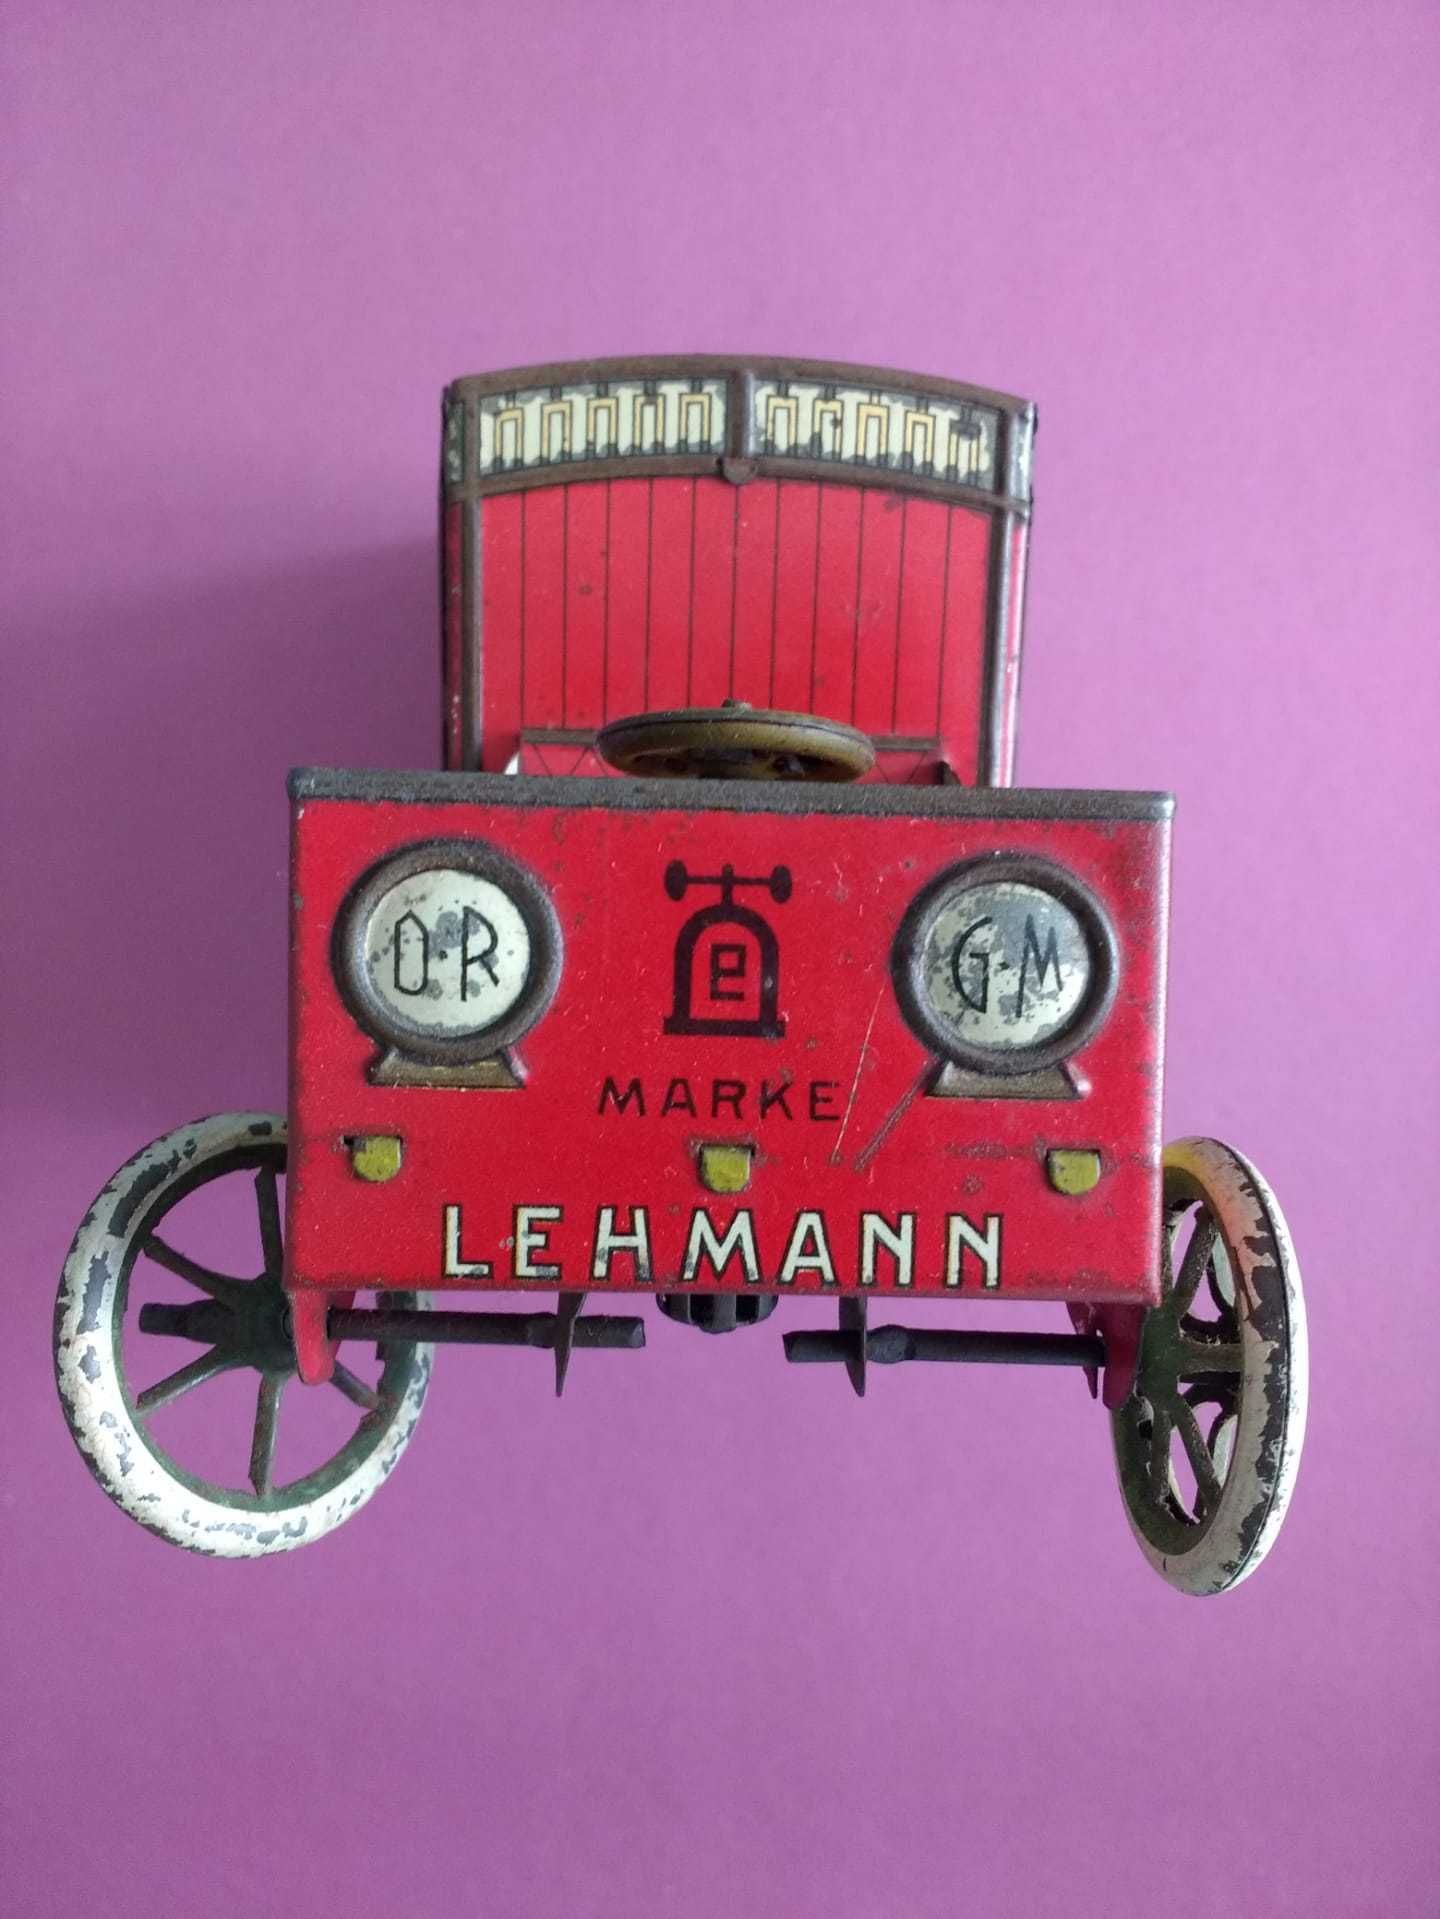 Raro brinquedo com mais de cem anos: carro de entregas Lehmann